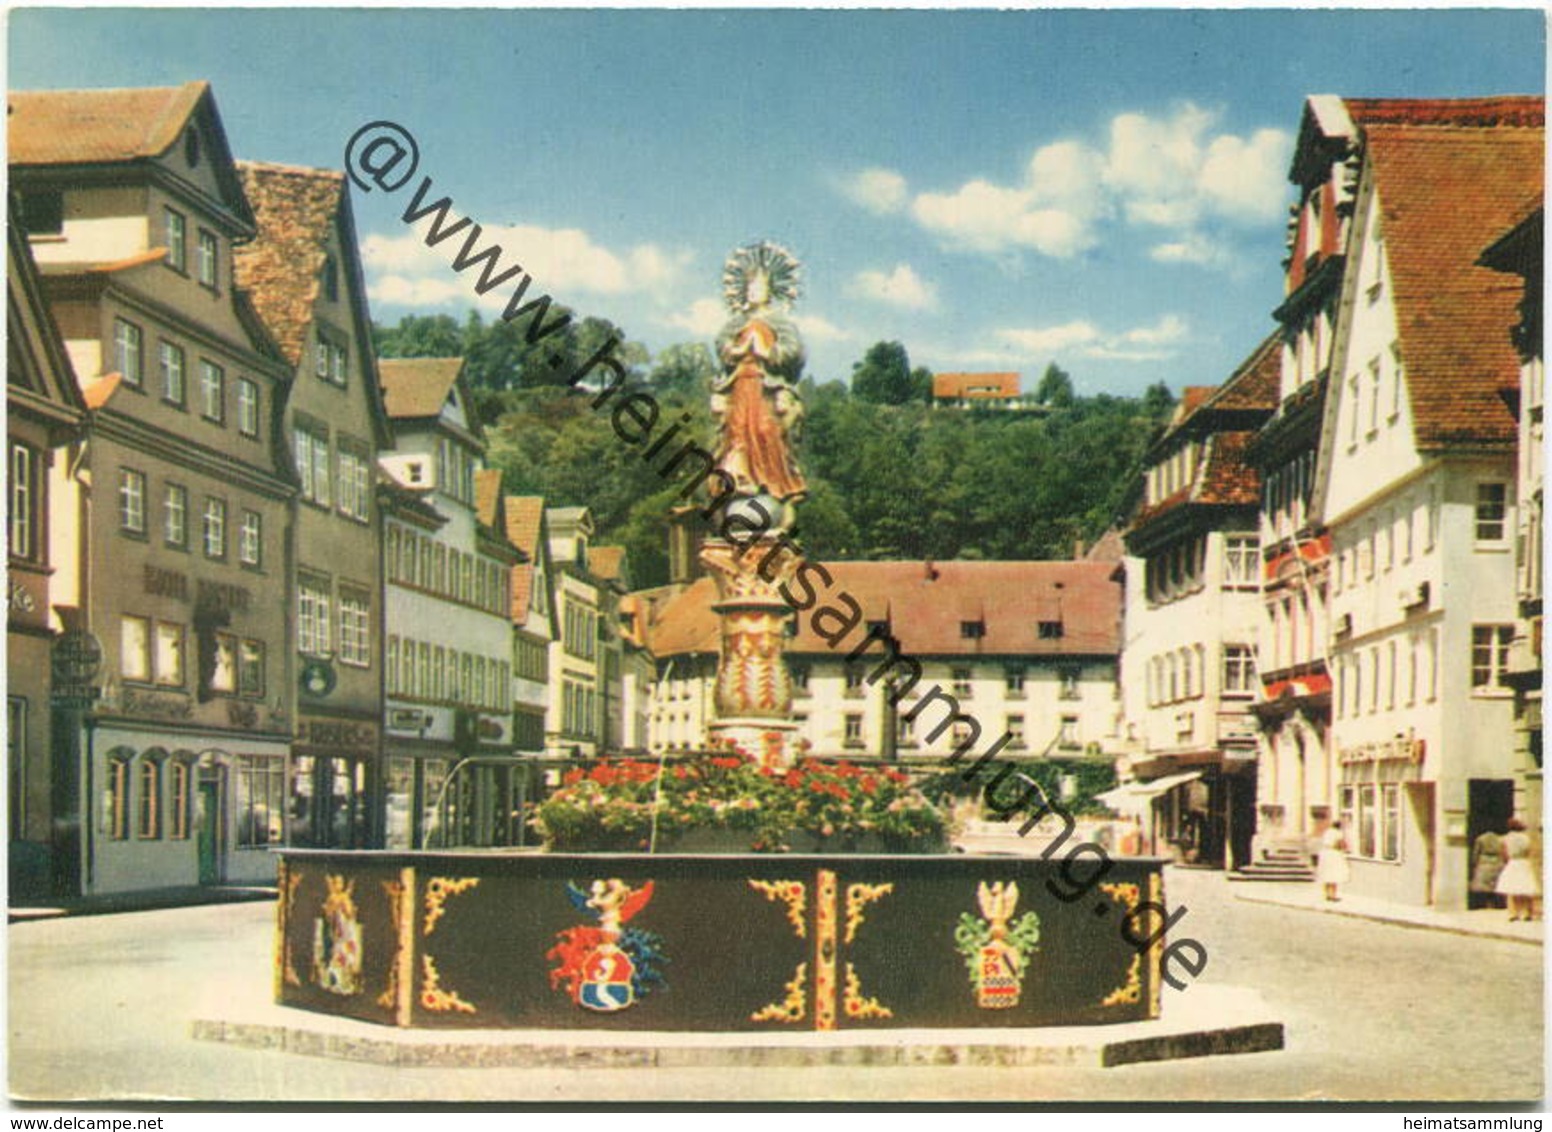 Schwäbisch Gmünd - Marktplatz Mit Brunnen - AK Großformat - Schwaebisch Gmünd